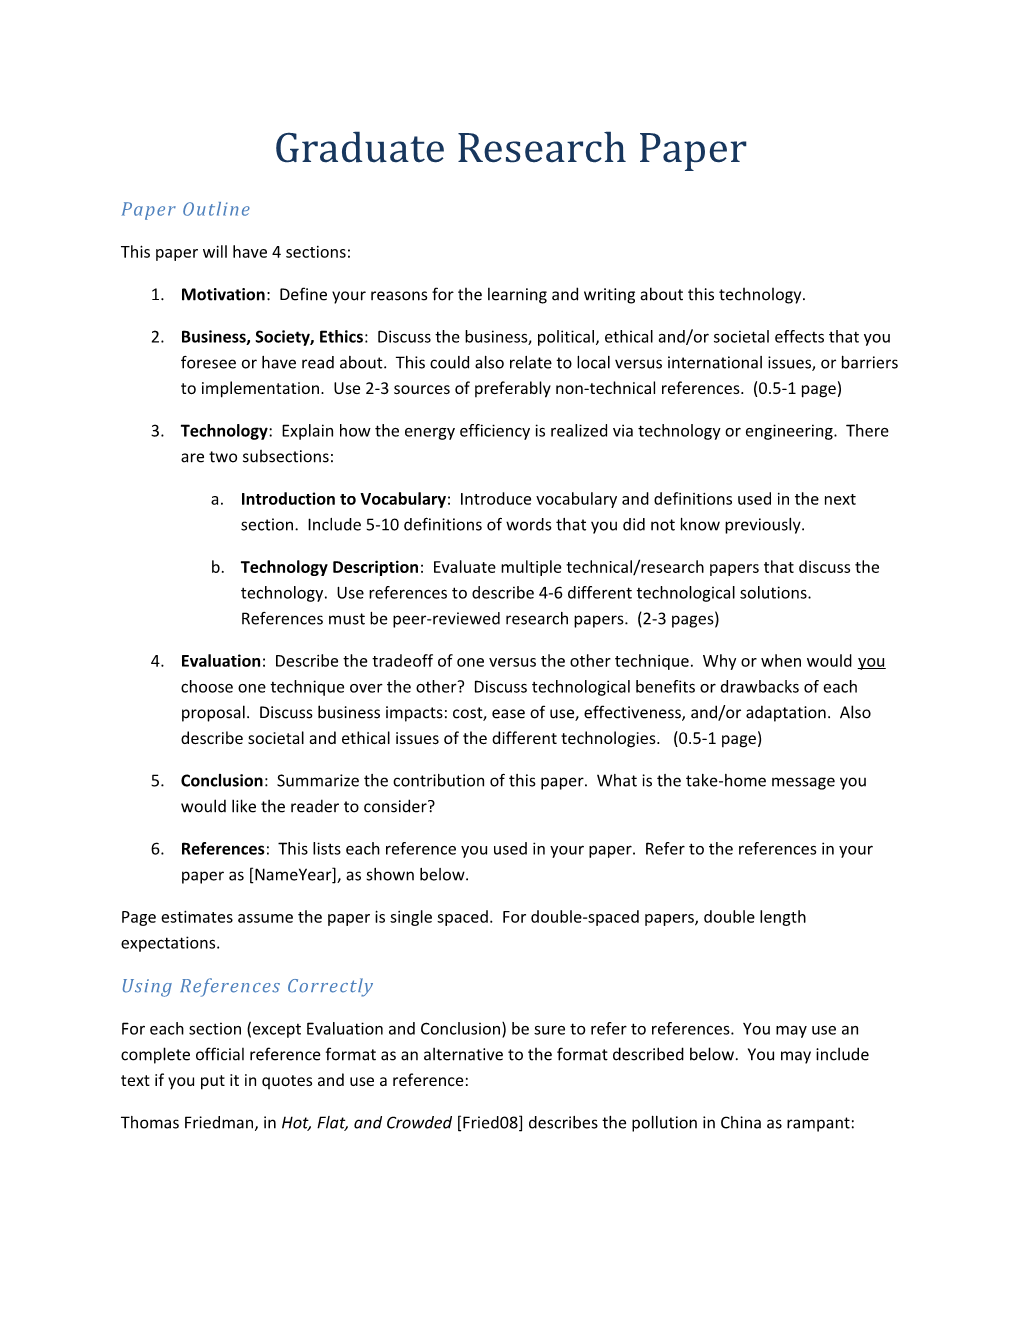 Graduate Research Paper